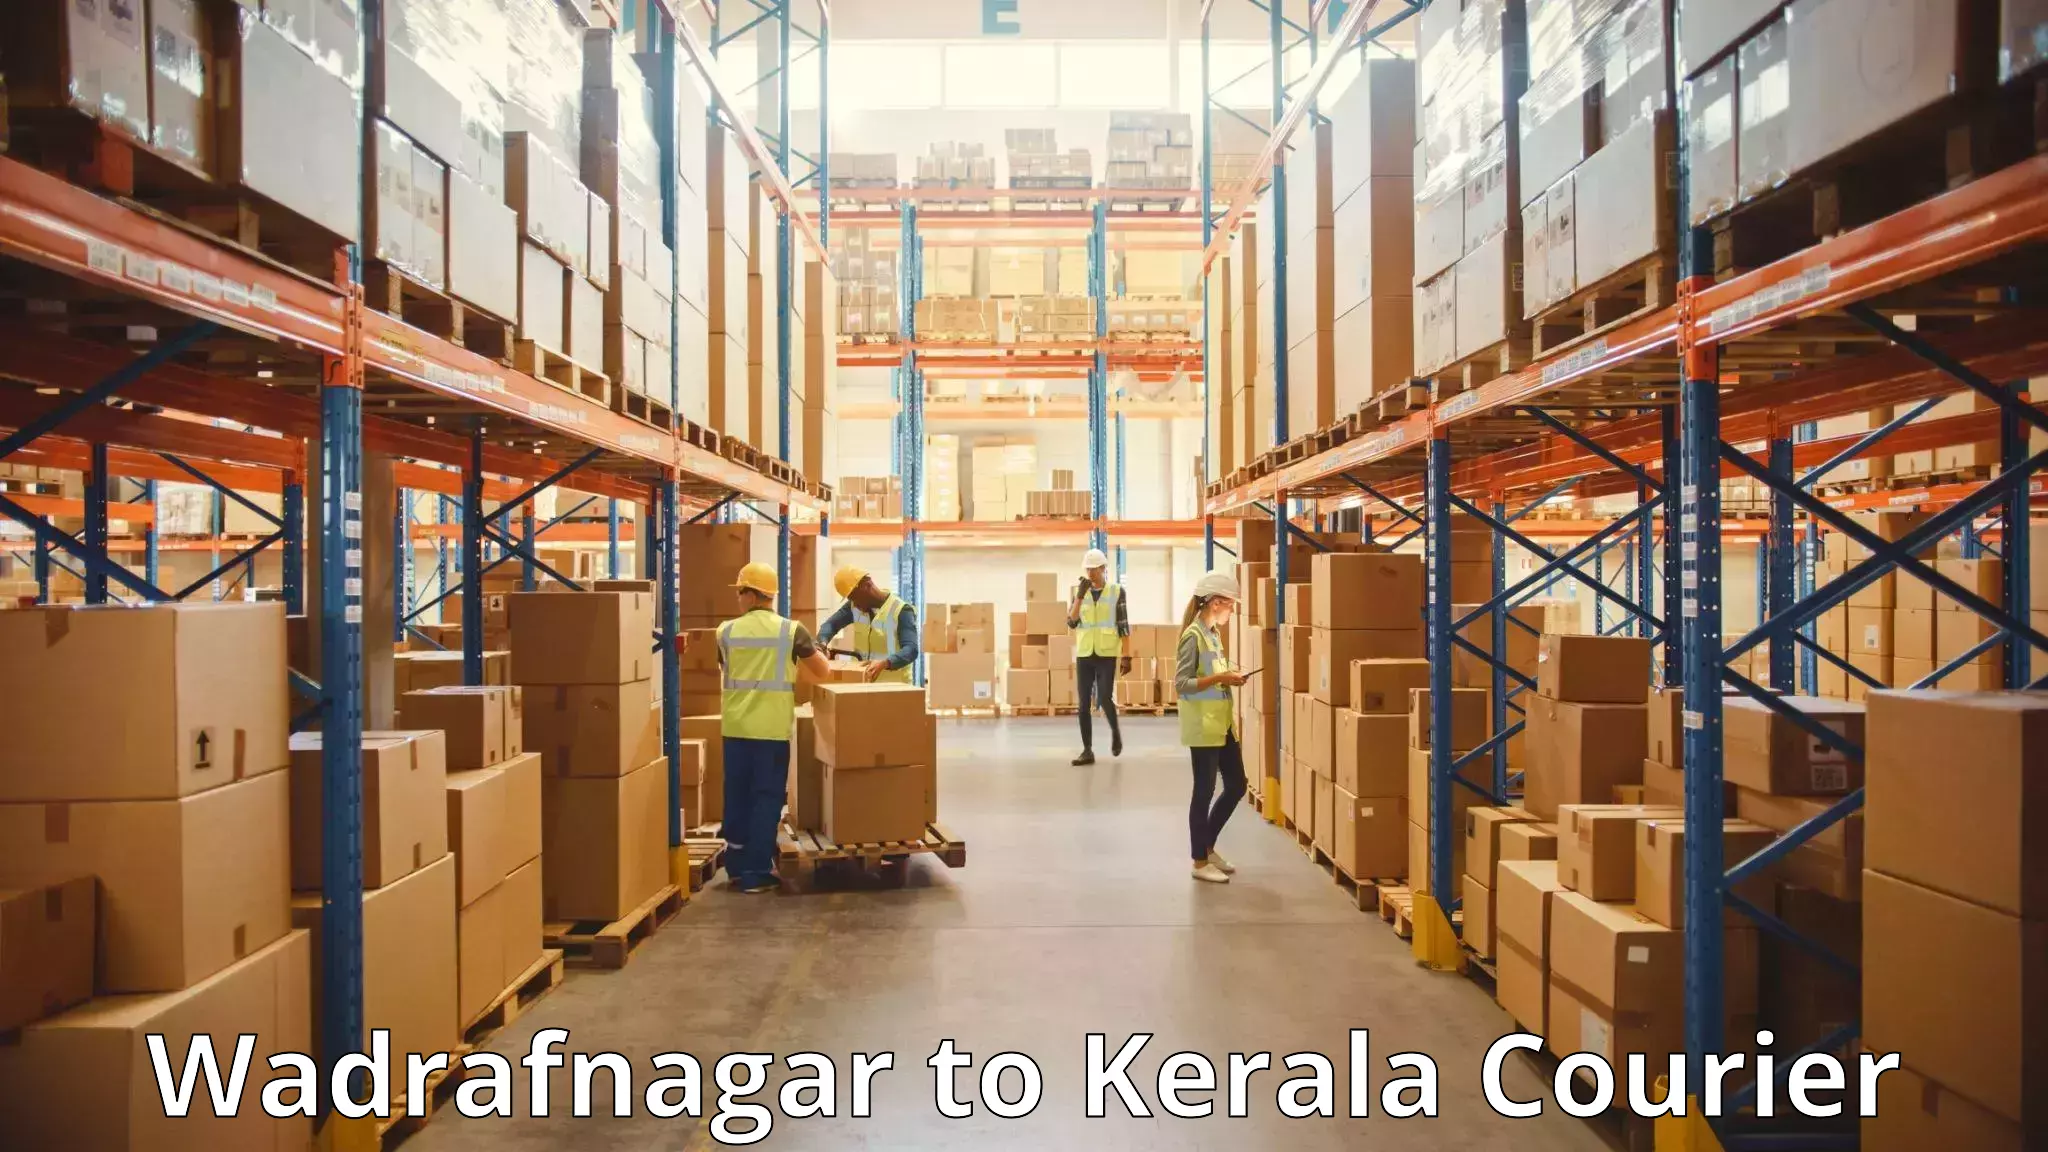 Weekend baggage shipping in Wadrafnagar to Cochin Port Kochi